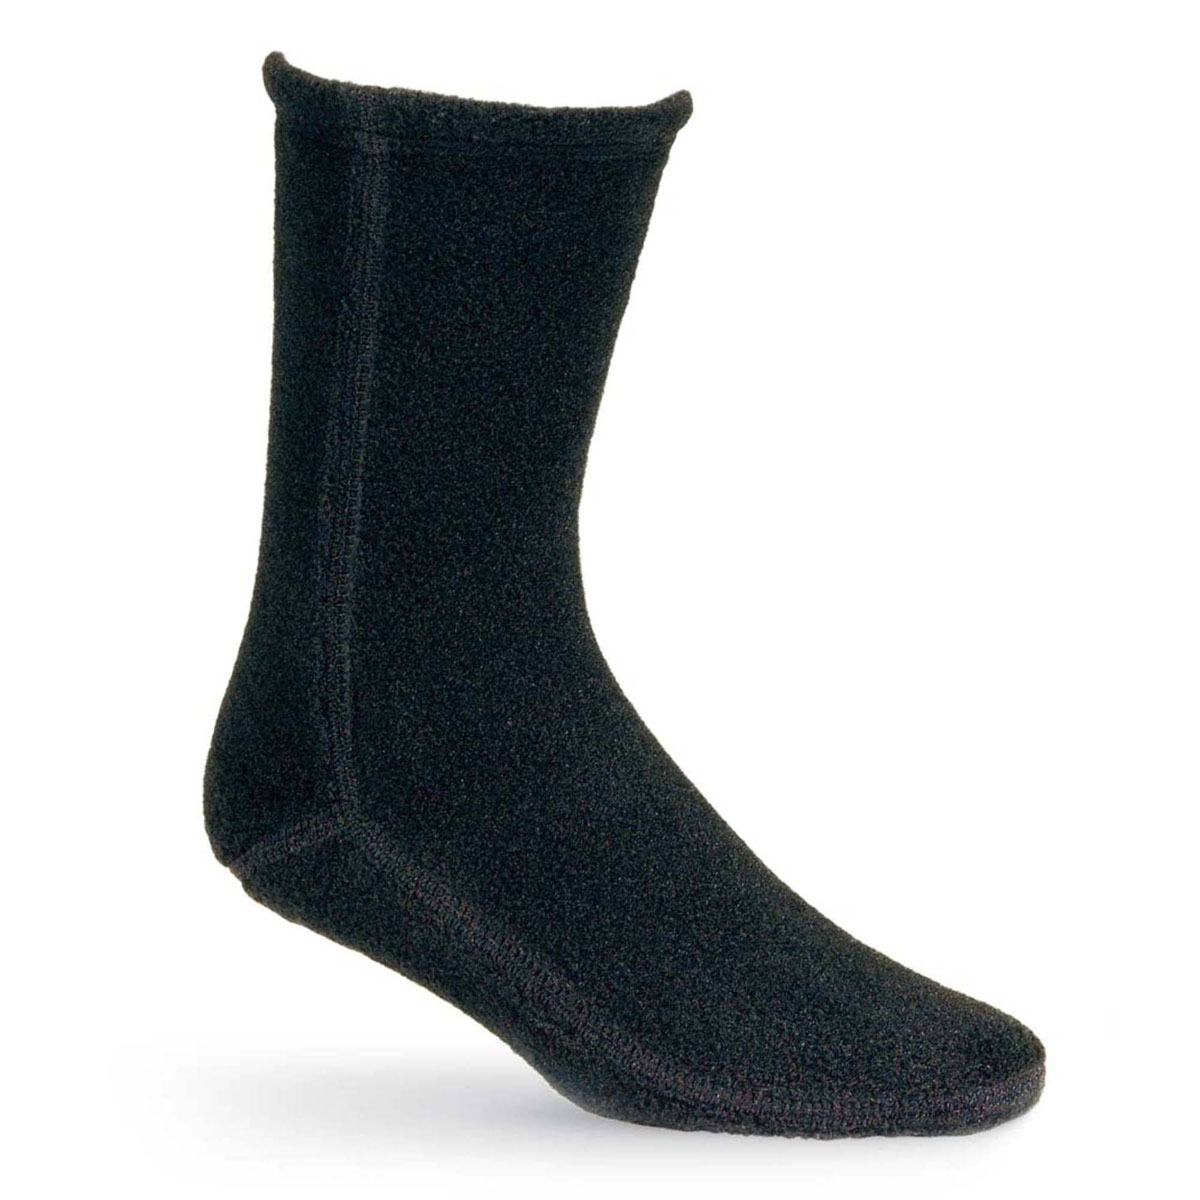 Unisex Acorn Versafit Socks